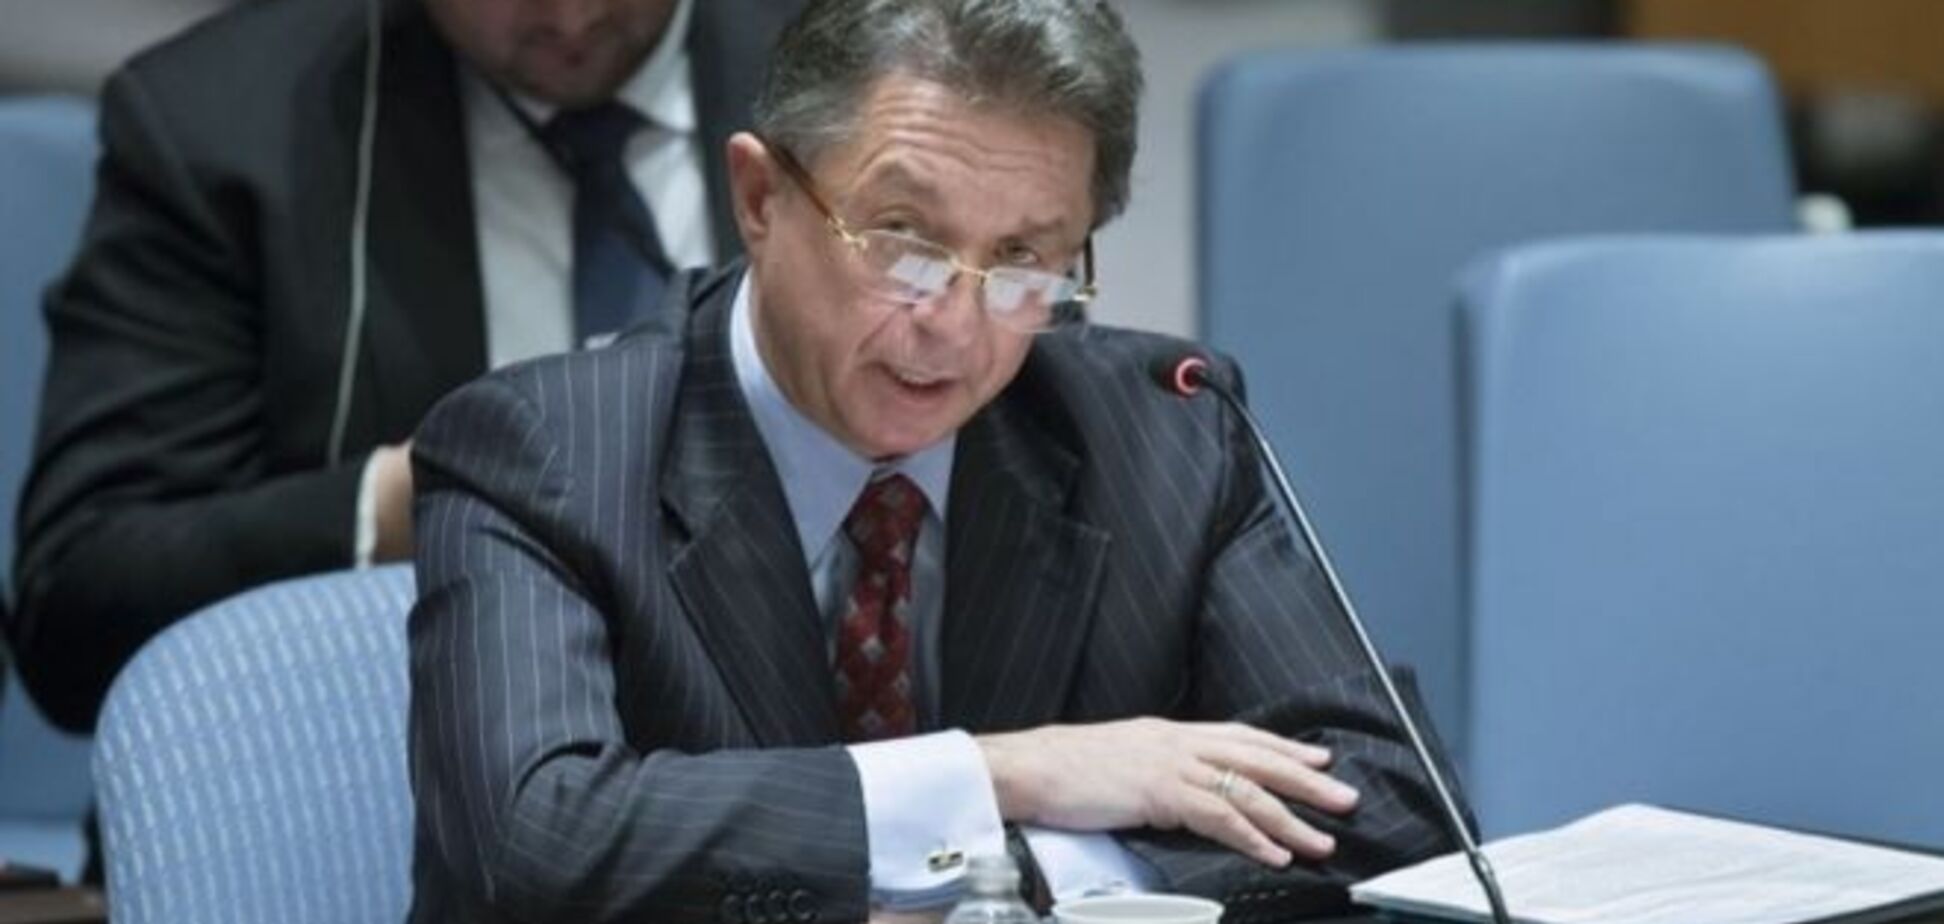 Постпред Украины в ООН: если я ударю Чуркина, то сделаю его героем